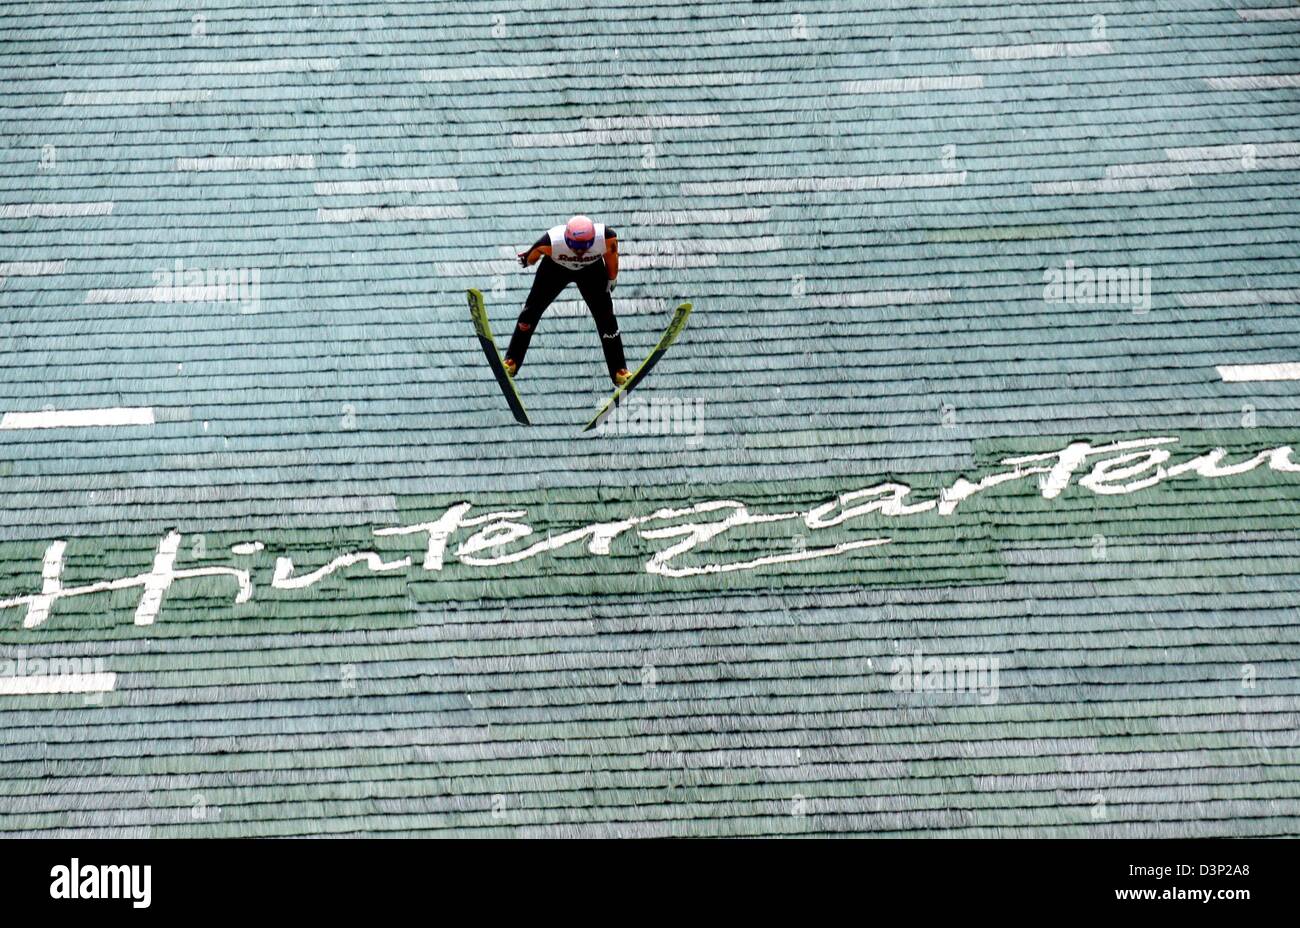 Il tedesco Ski-ponticello Georg Spaeth sorvola la scritta 'Hinterzarten' durante il suo salto vincente alla FIS Sommer Grand Prix 2005 in Hinterzarten, Germania, domenica 06 agosto 2006. Spaeth ha vinto davanti a runner-up austriaco Andreas Kofler e terzo posto austriaco Schlierenzauer Gregor. Foto: Rolf Haid Foto Stock